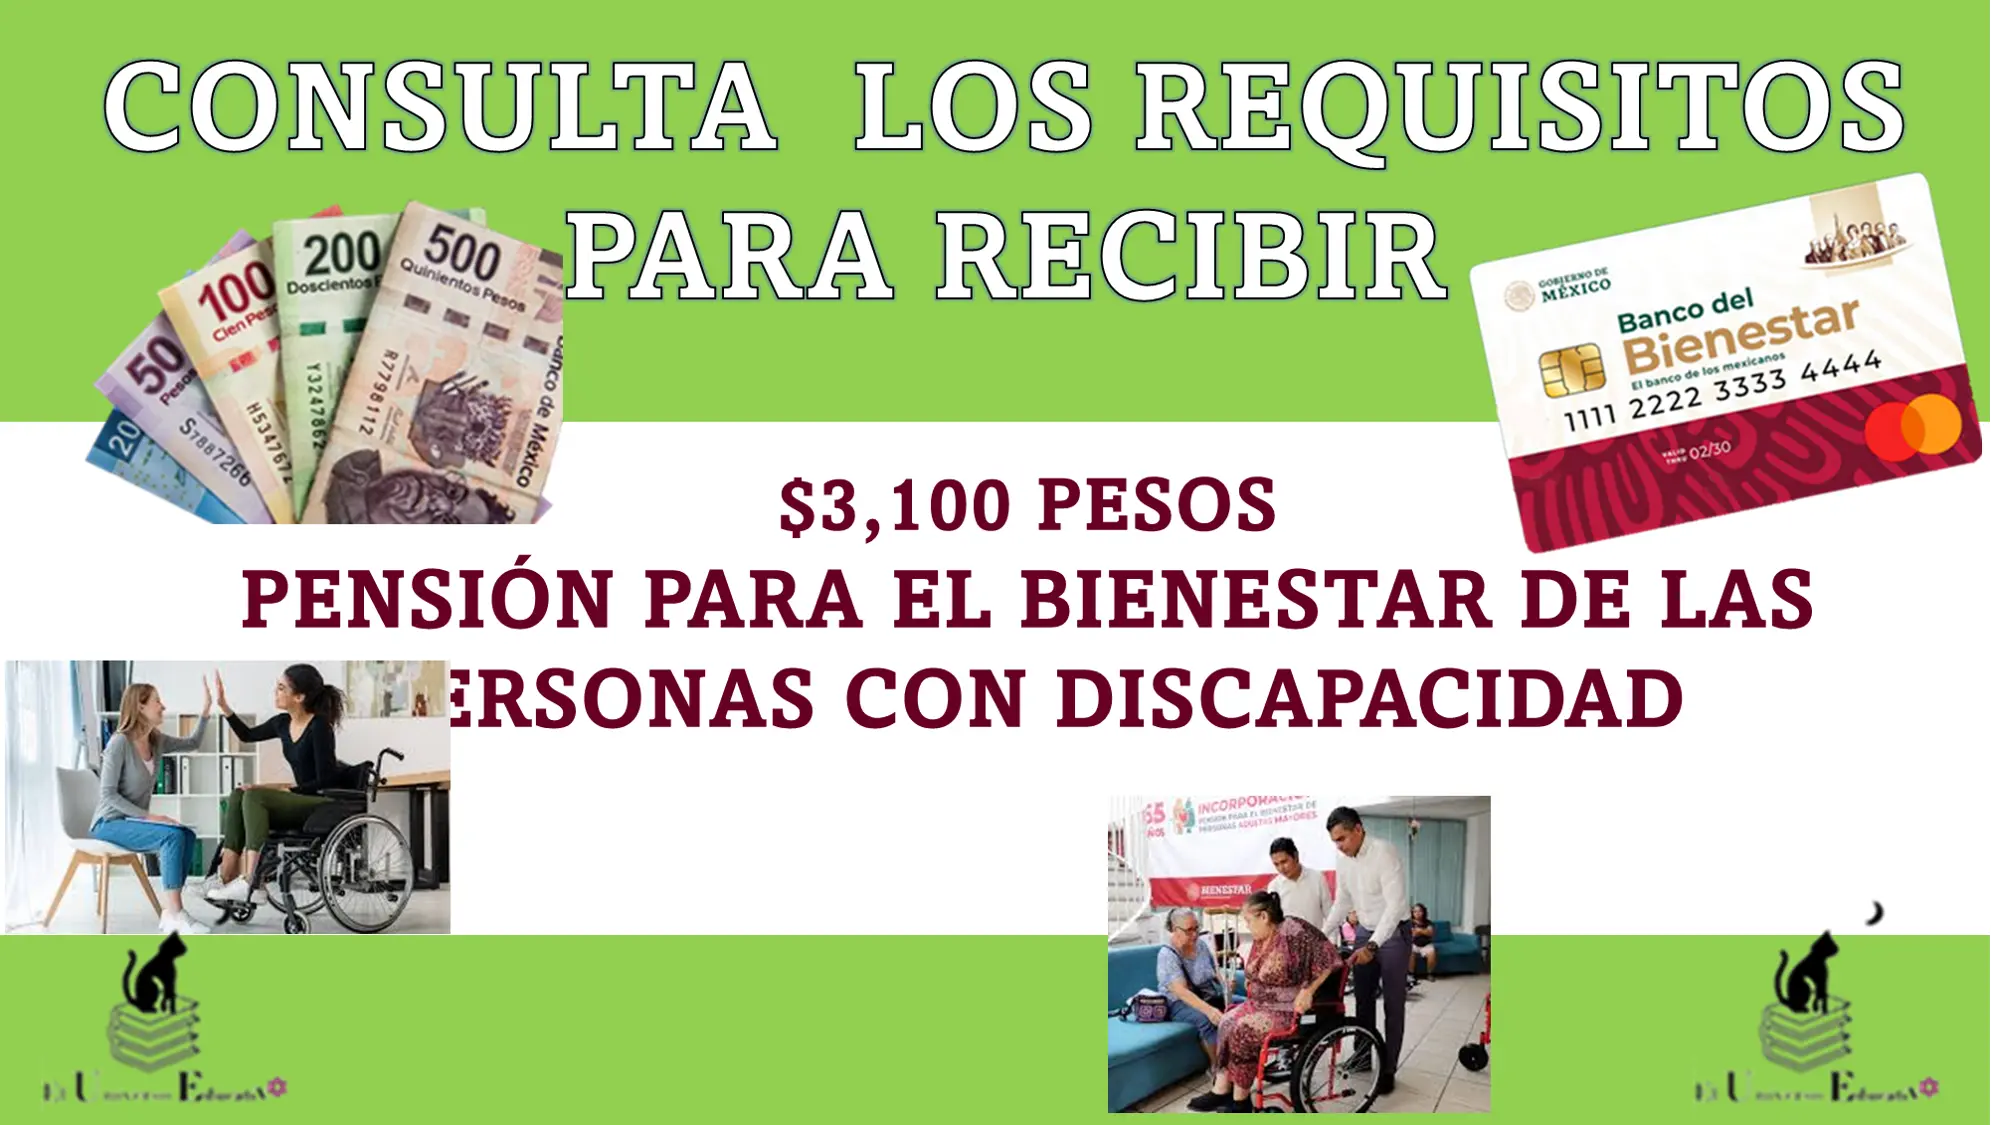 CONSULTA LOS REQUISITOS PARA RECIBIR $3,100 PESOS | PENSIÓN PARA EL BIENESTAR DE LAS PERSONAS CON DISCAPACIDAD